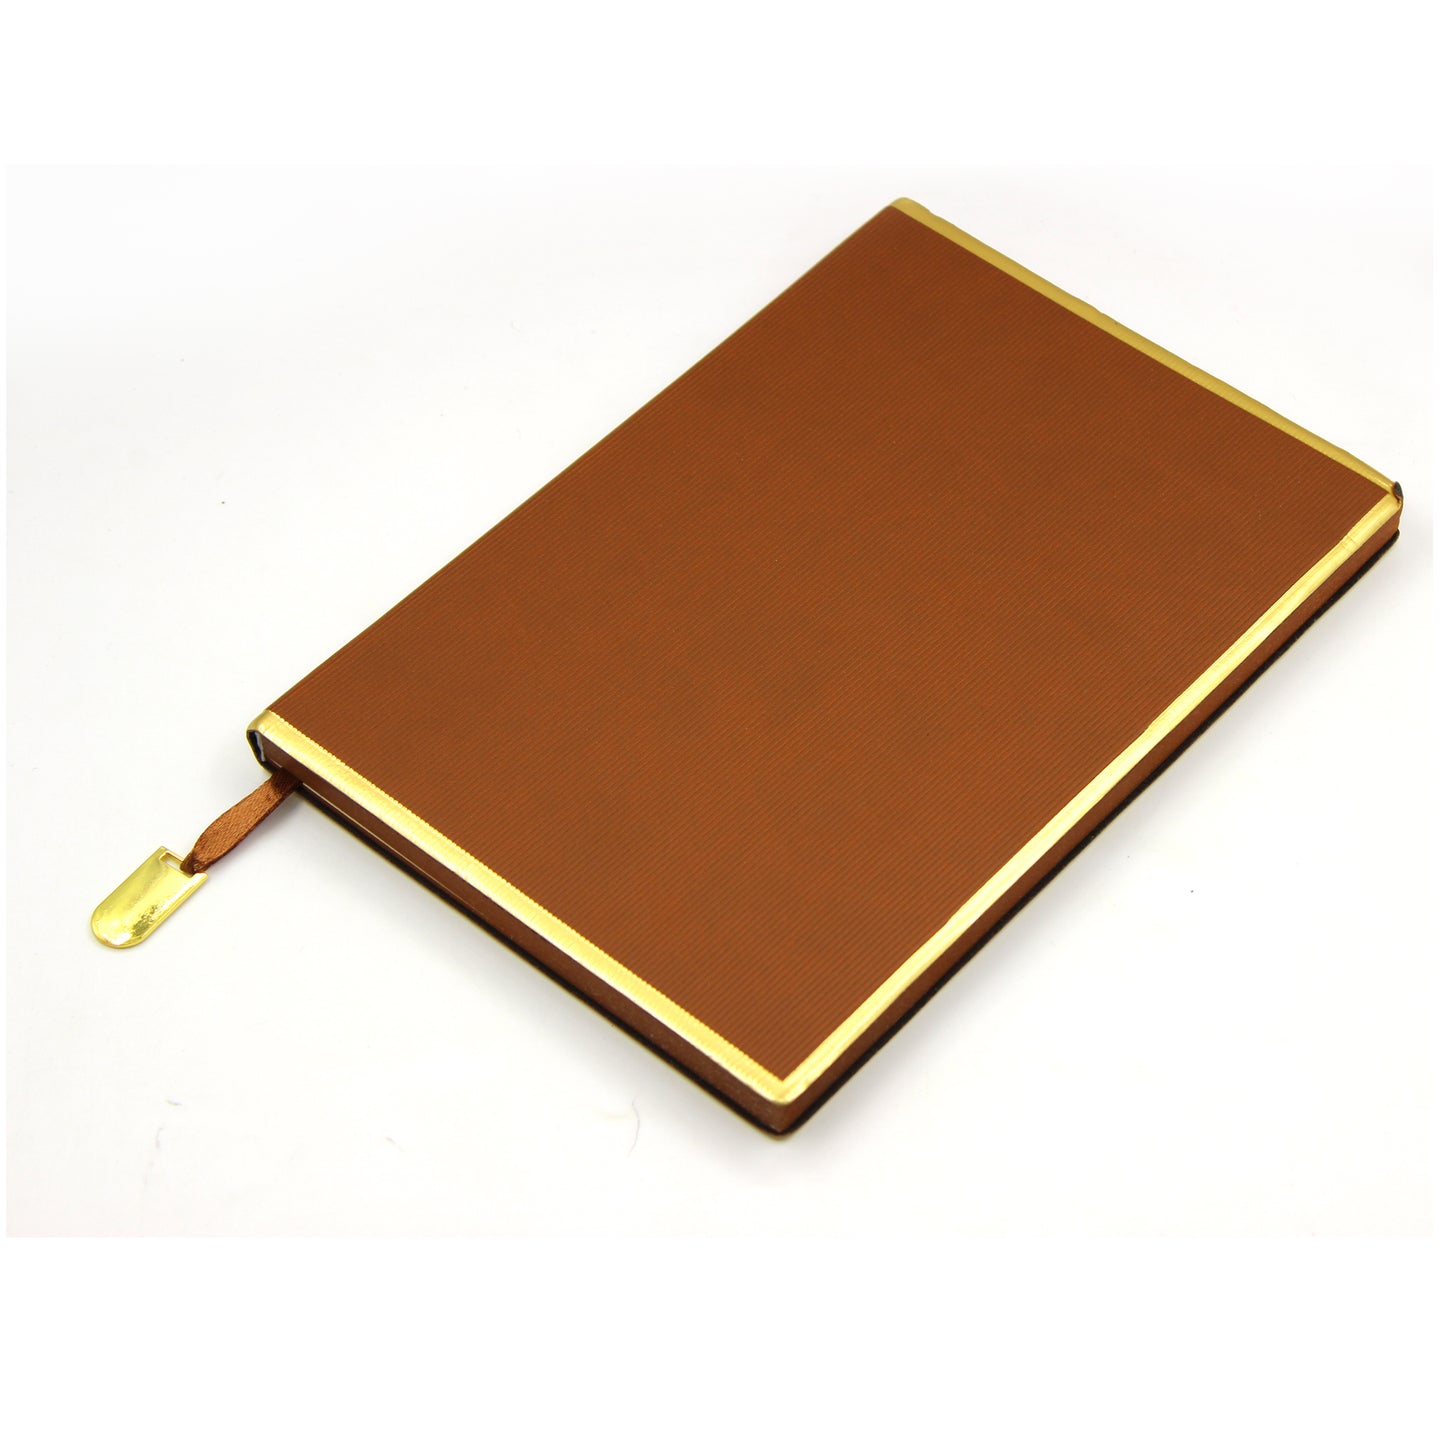 D’ORO A5 Journal Notebook